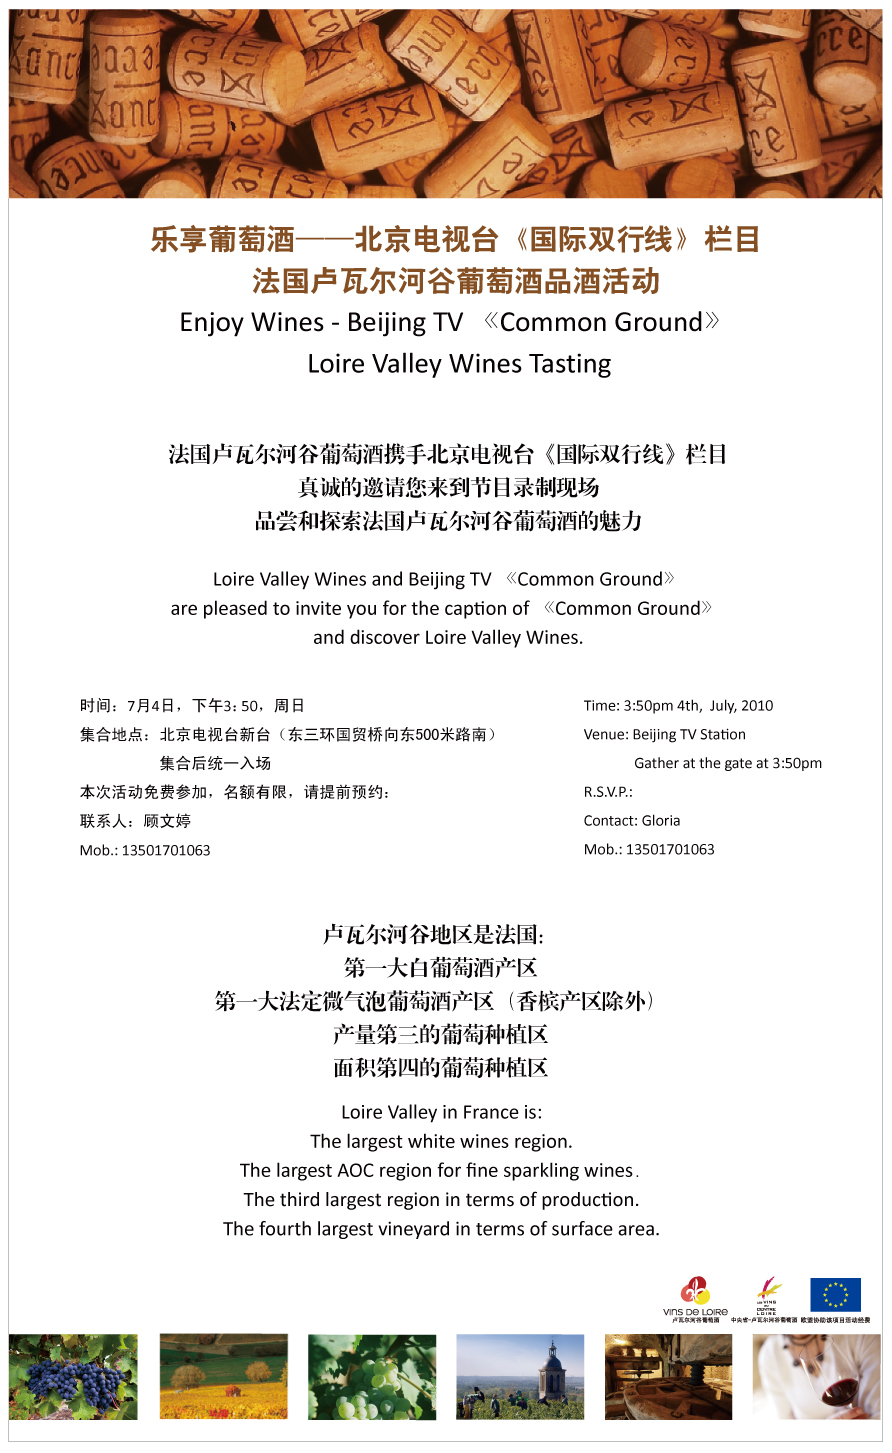 乐享葡萄酒——北京电视台《国际双行线》栏目法国卢瓦尔河谷葡萄酒品酒活动